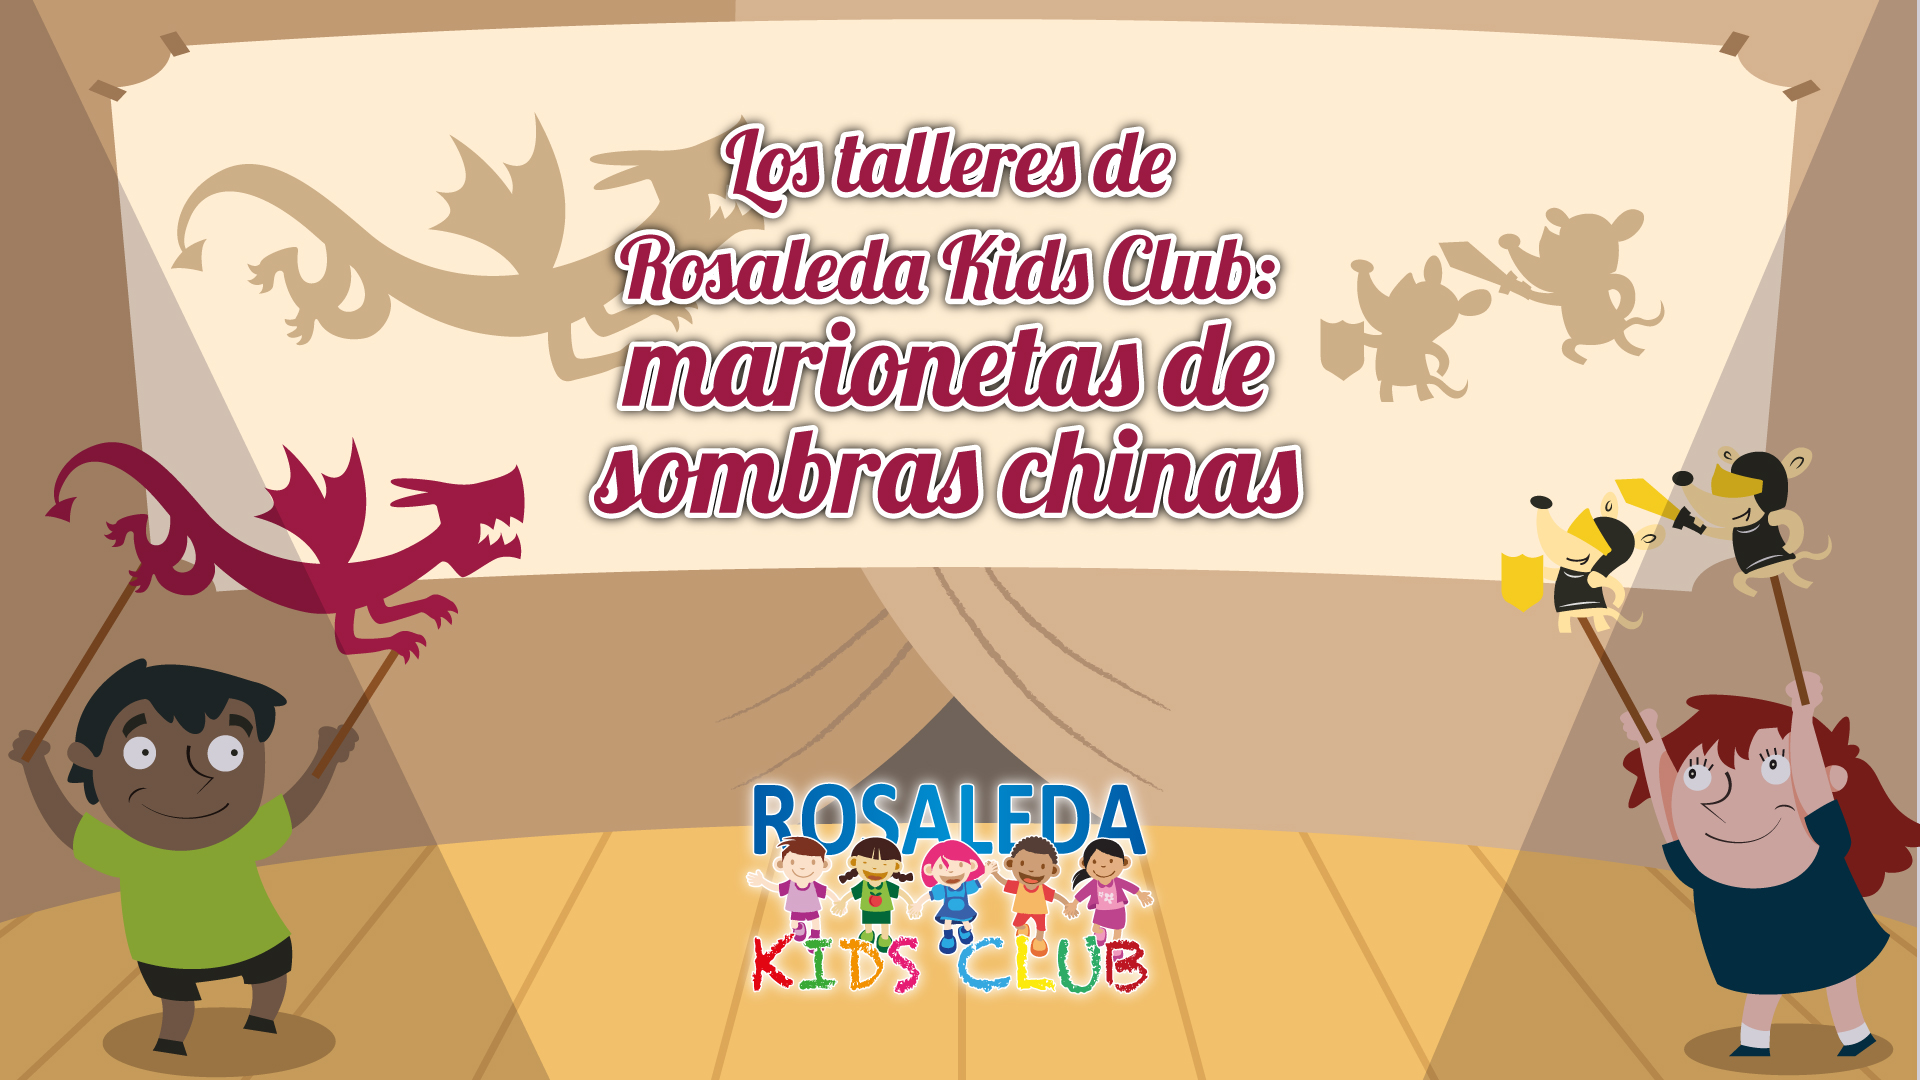 Las talleres de Rosaleda Kids Club: marionetas de sombras chinas